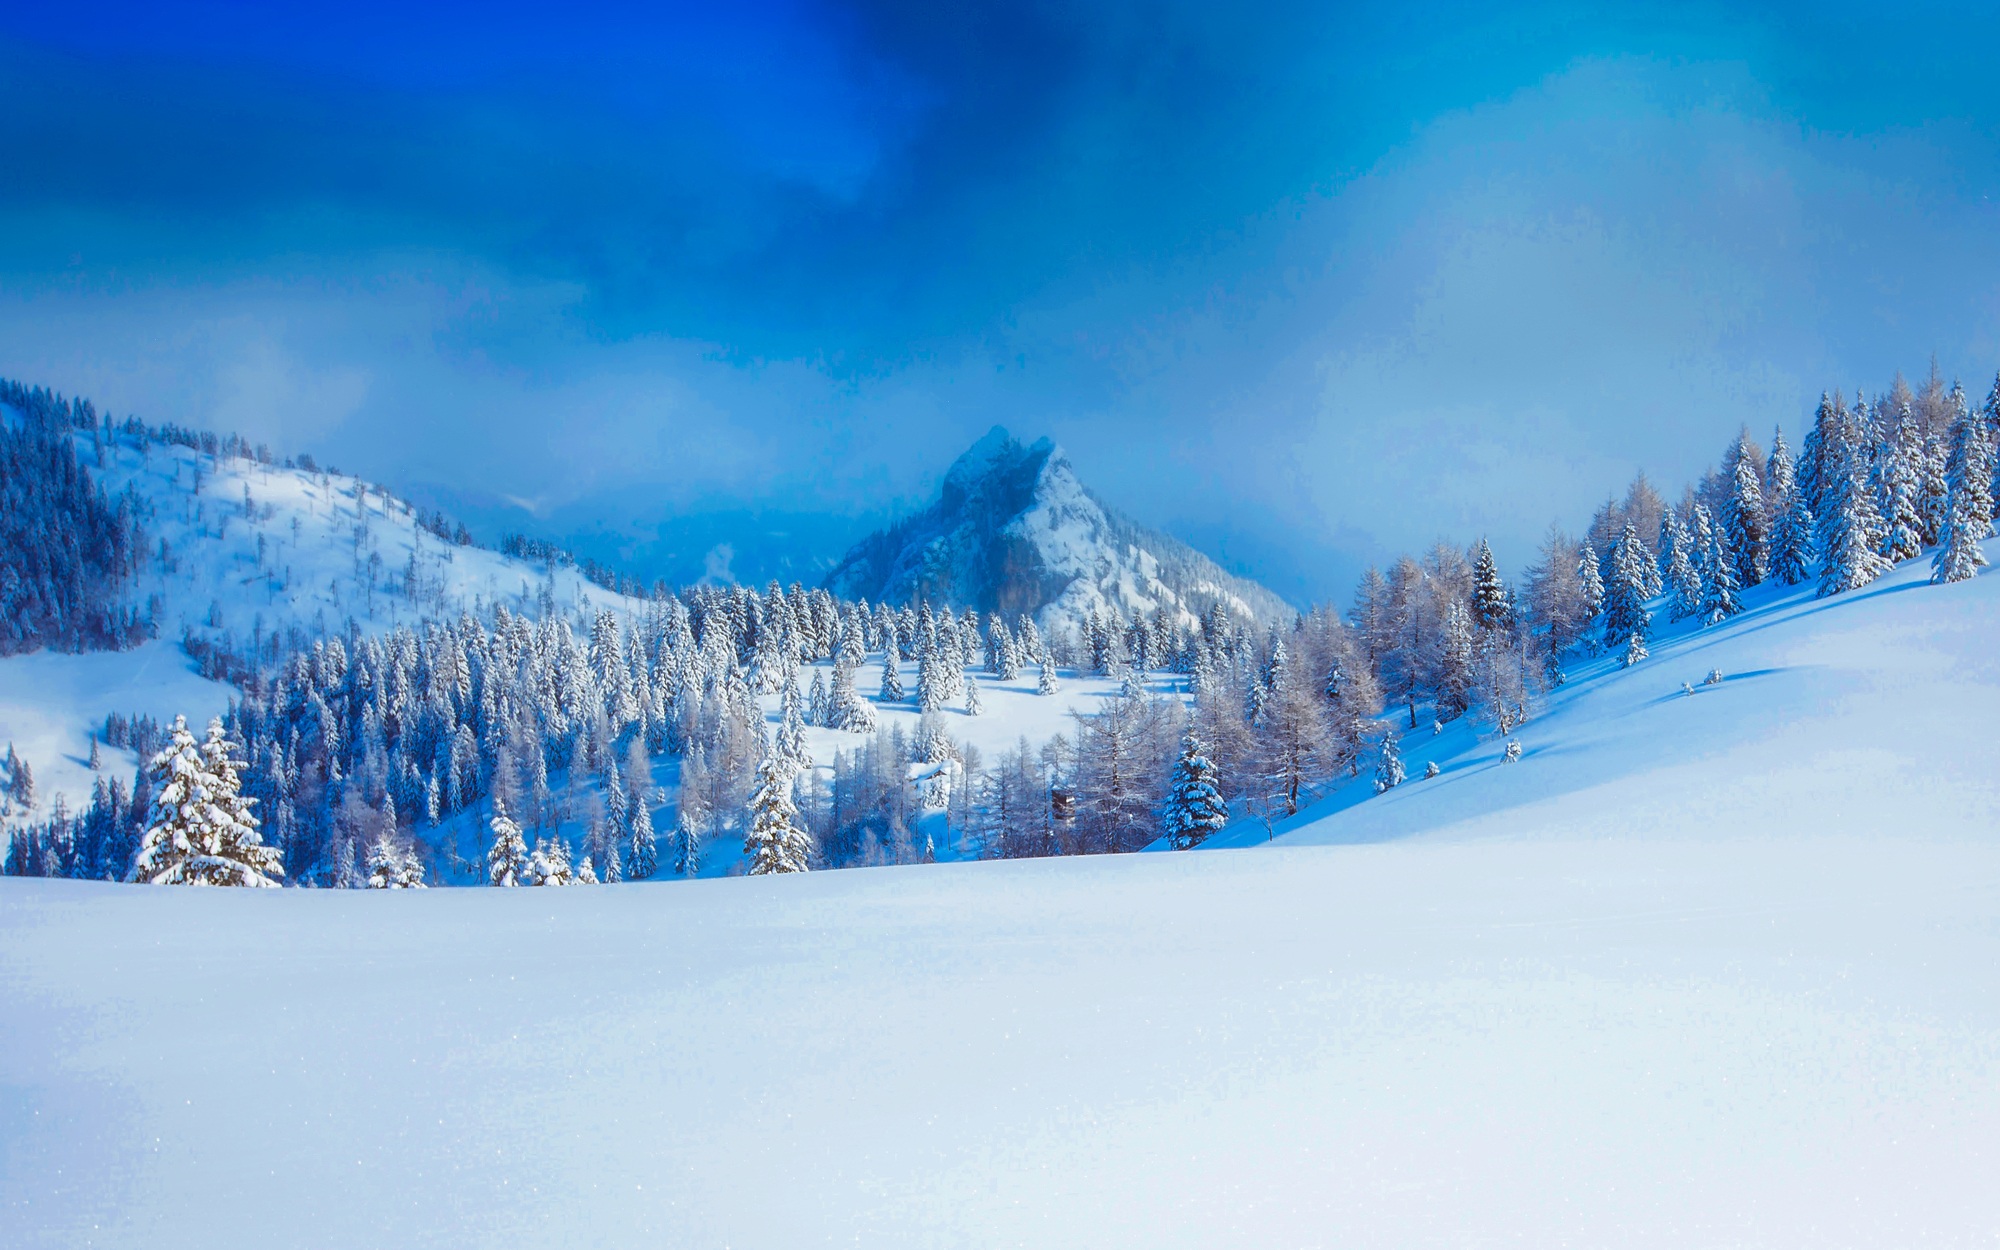 Скачать обои бесплатно Зима, Снег, Гора, Лес, Дерево, Австрия, Альпы, Земля/природа картинка на рабочий стол ПК